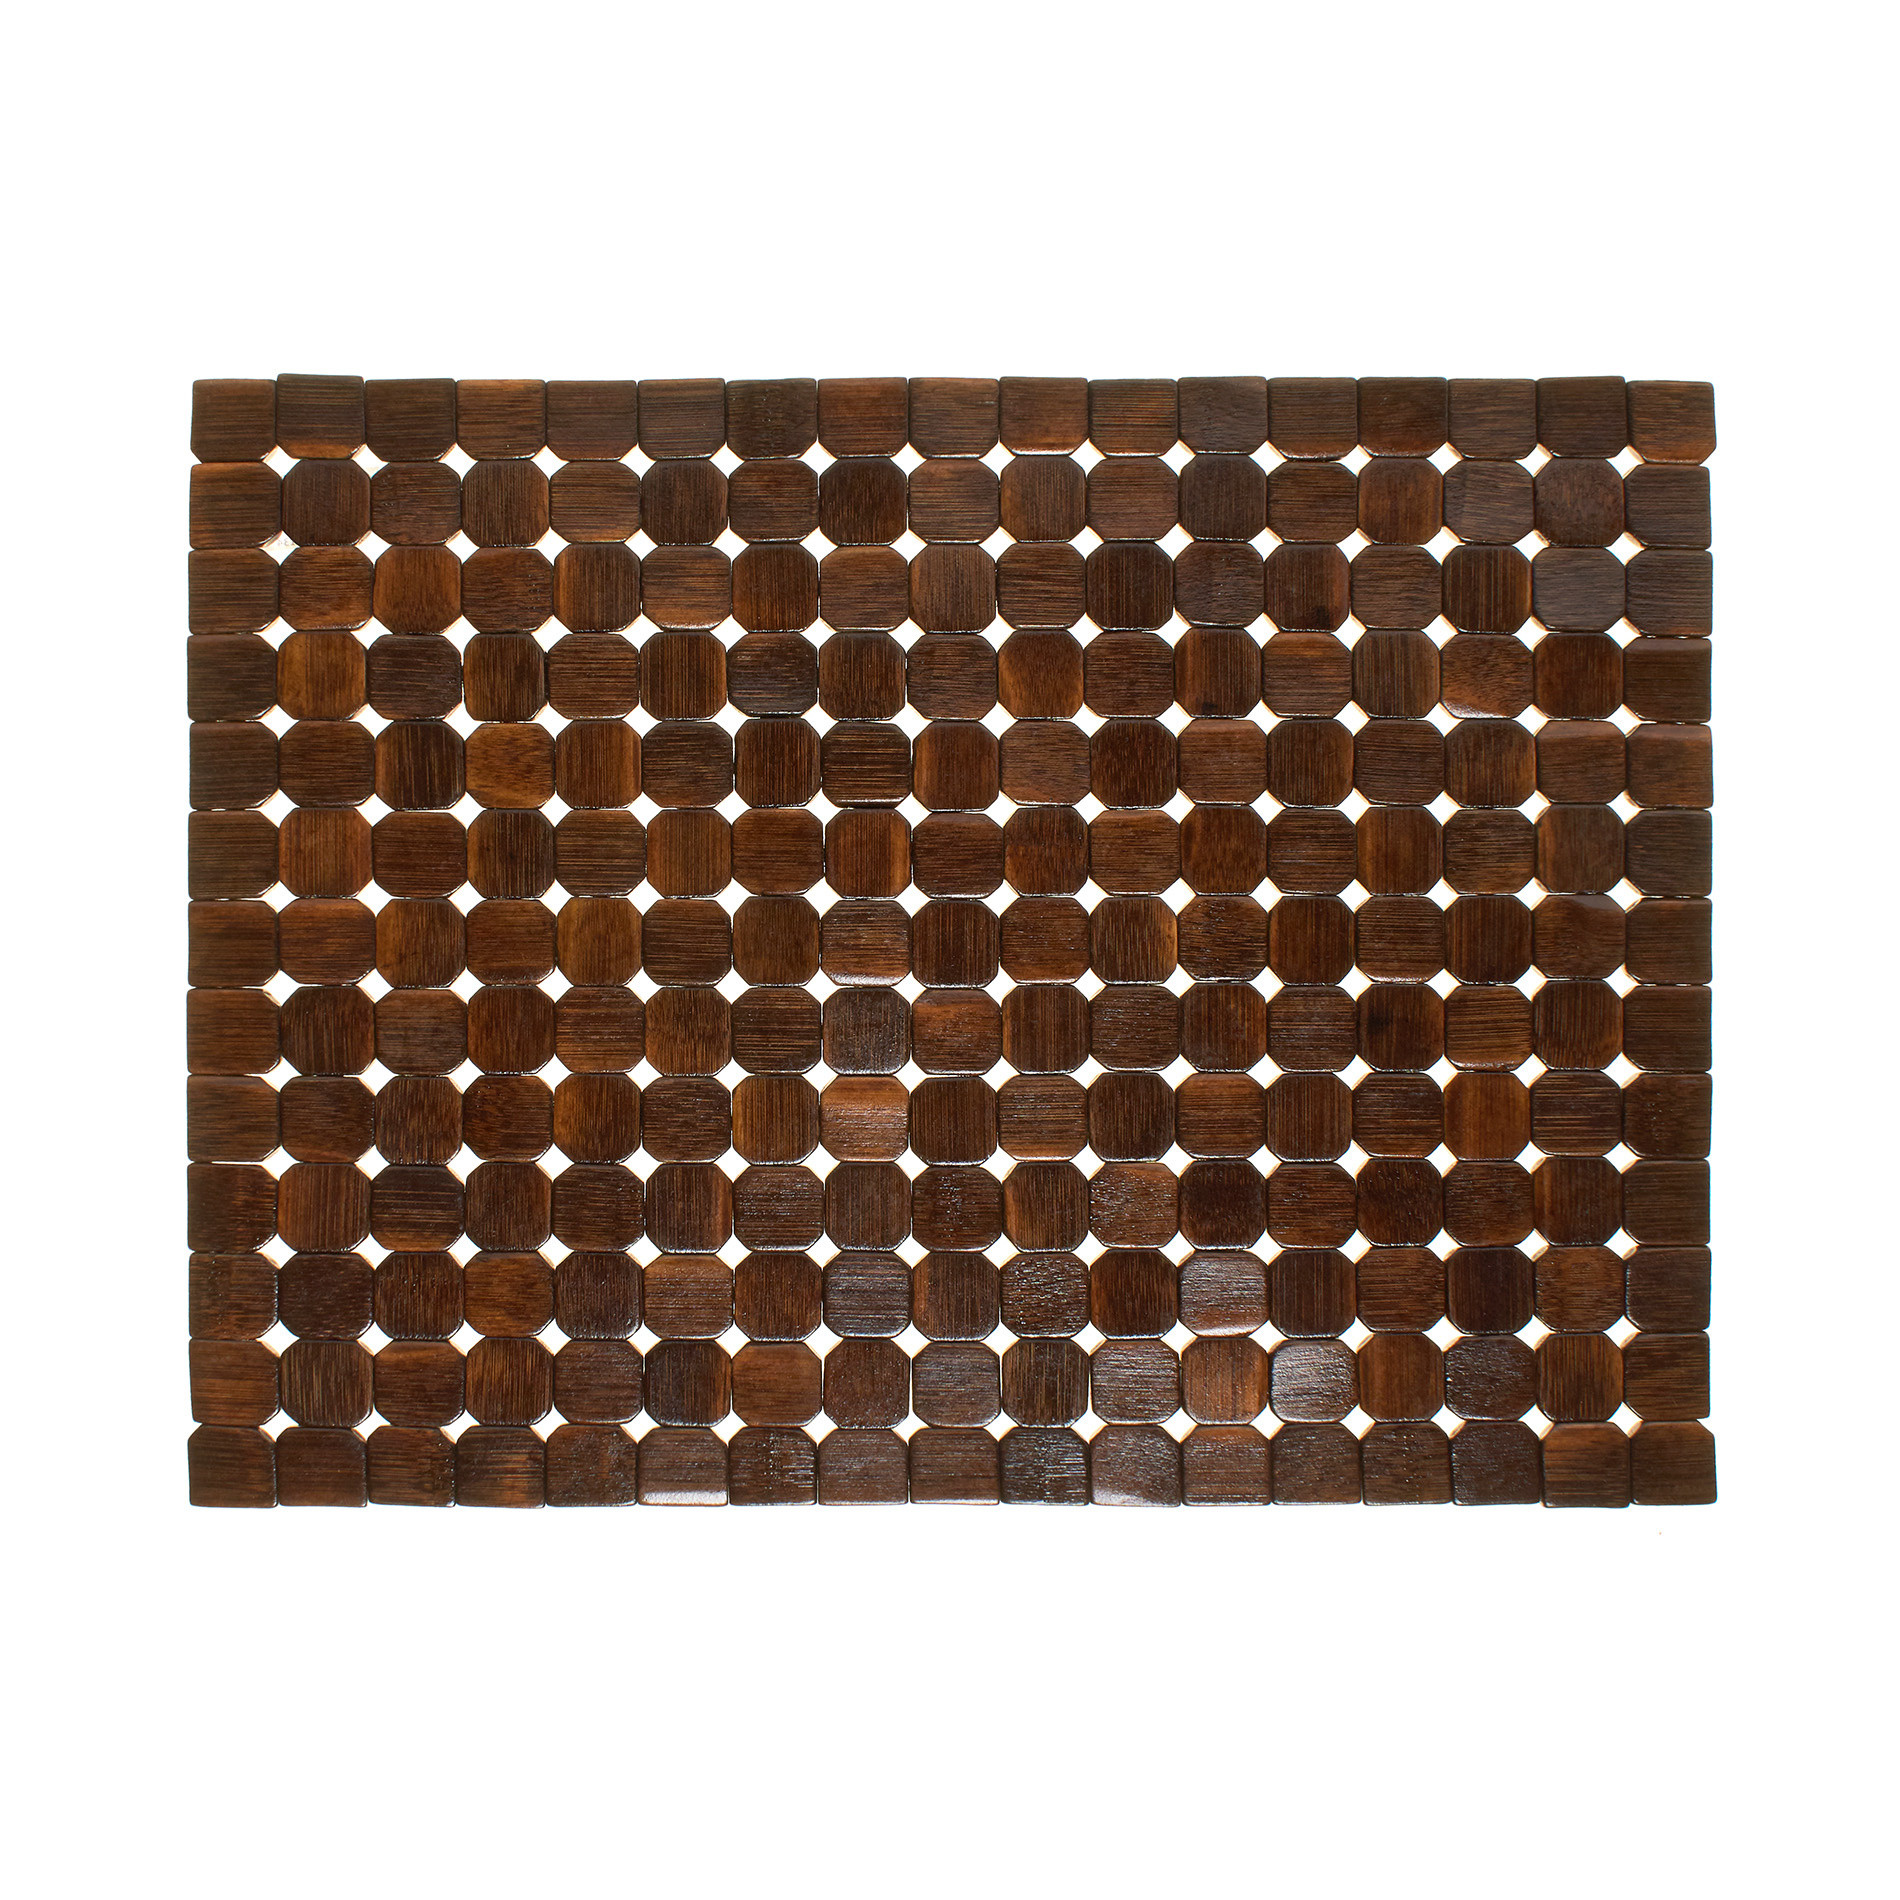 Расписной бамбуковый коврик для столовых приборов Coincasa, темно-коричневый подставка для столовых 12x12x14 см приборов бамбук цвет бежевый